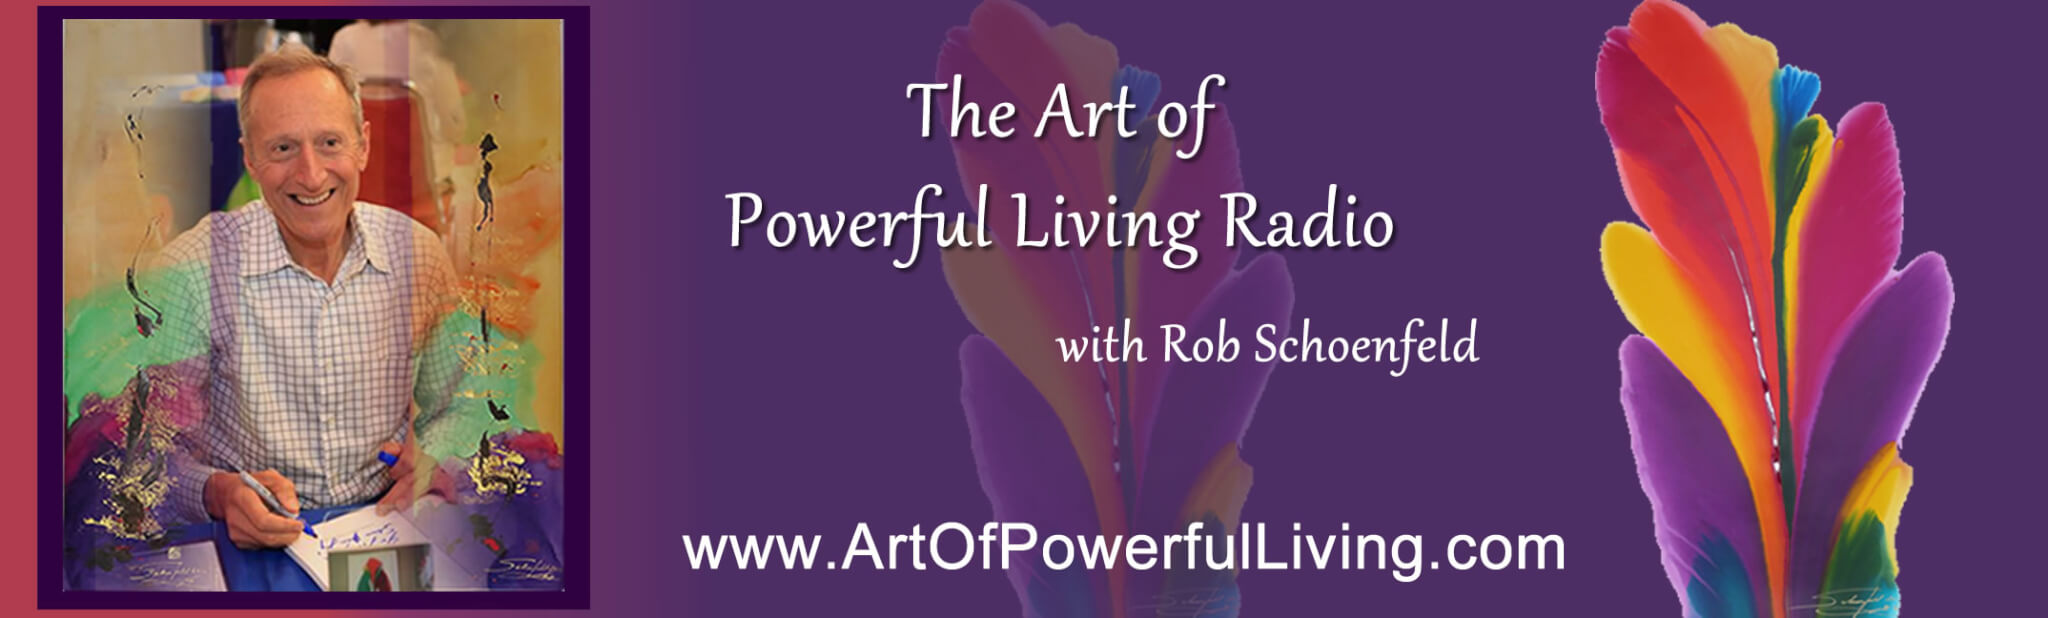 robert-schoenfeld-art-of-powerful-living-radio-website